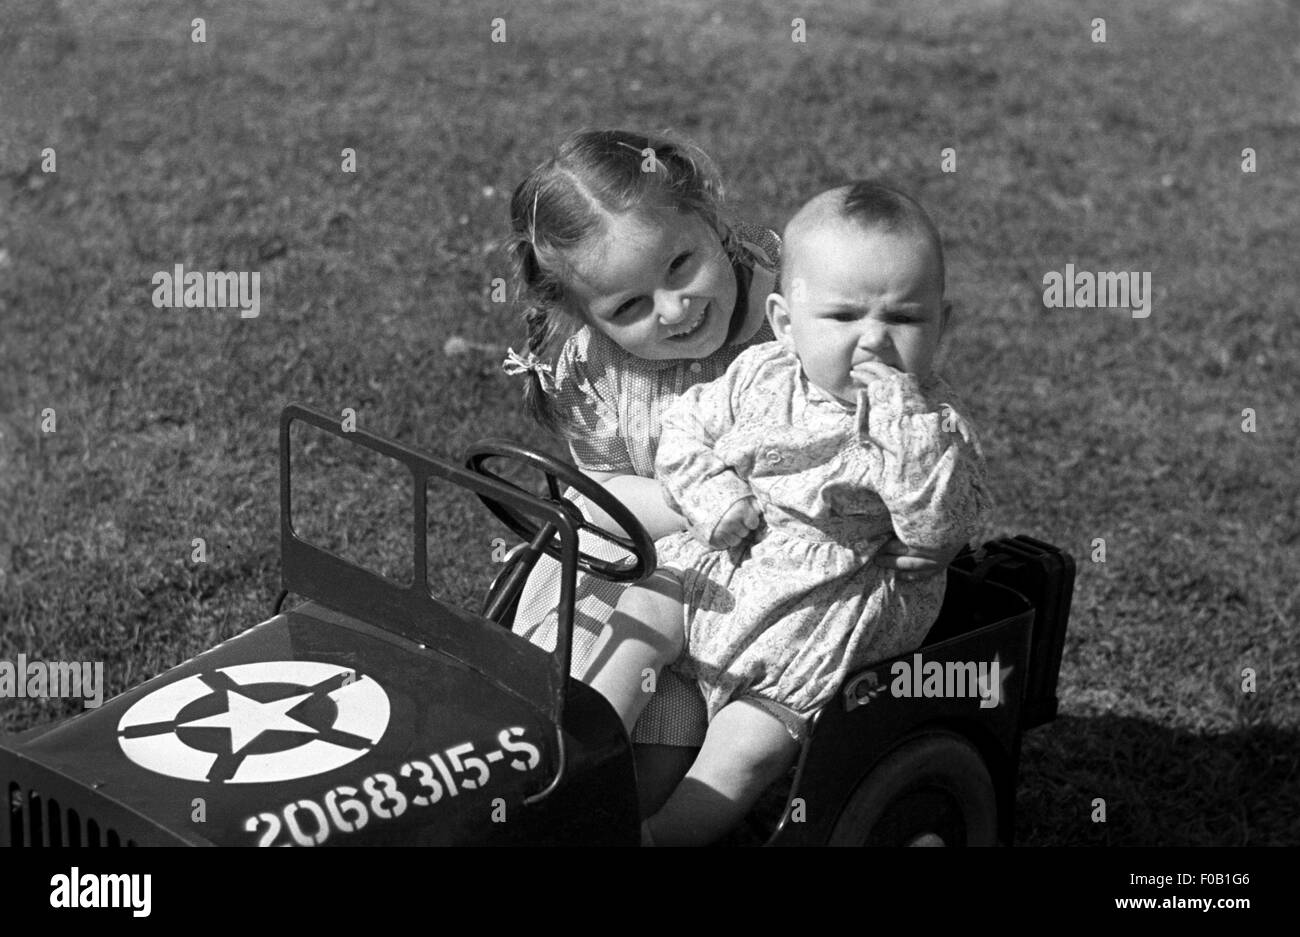 Portrait d'une jeune fille avec sa petite sœur assis dans un jouet jeep américaine Banque D'Images